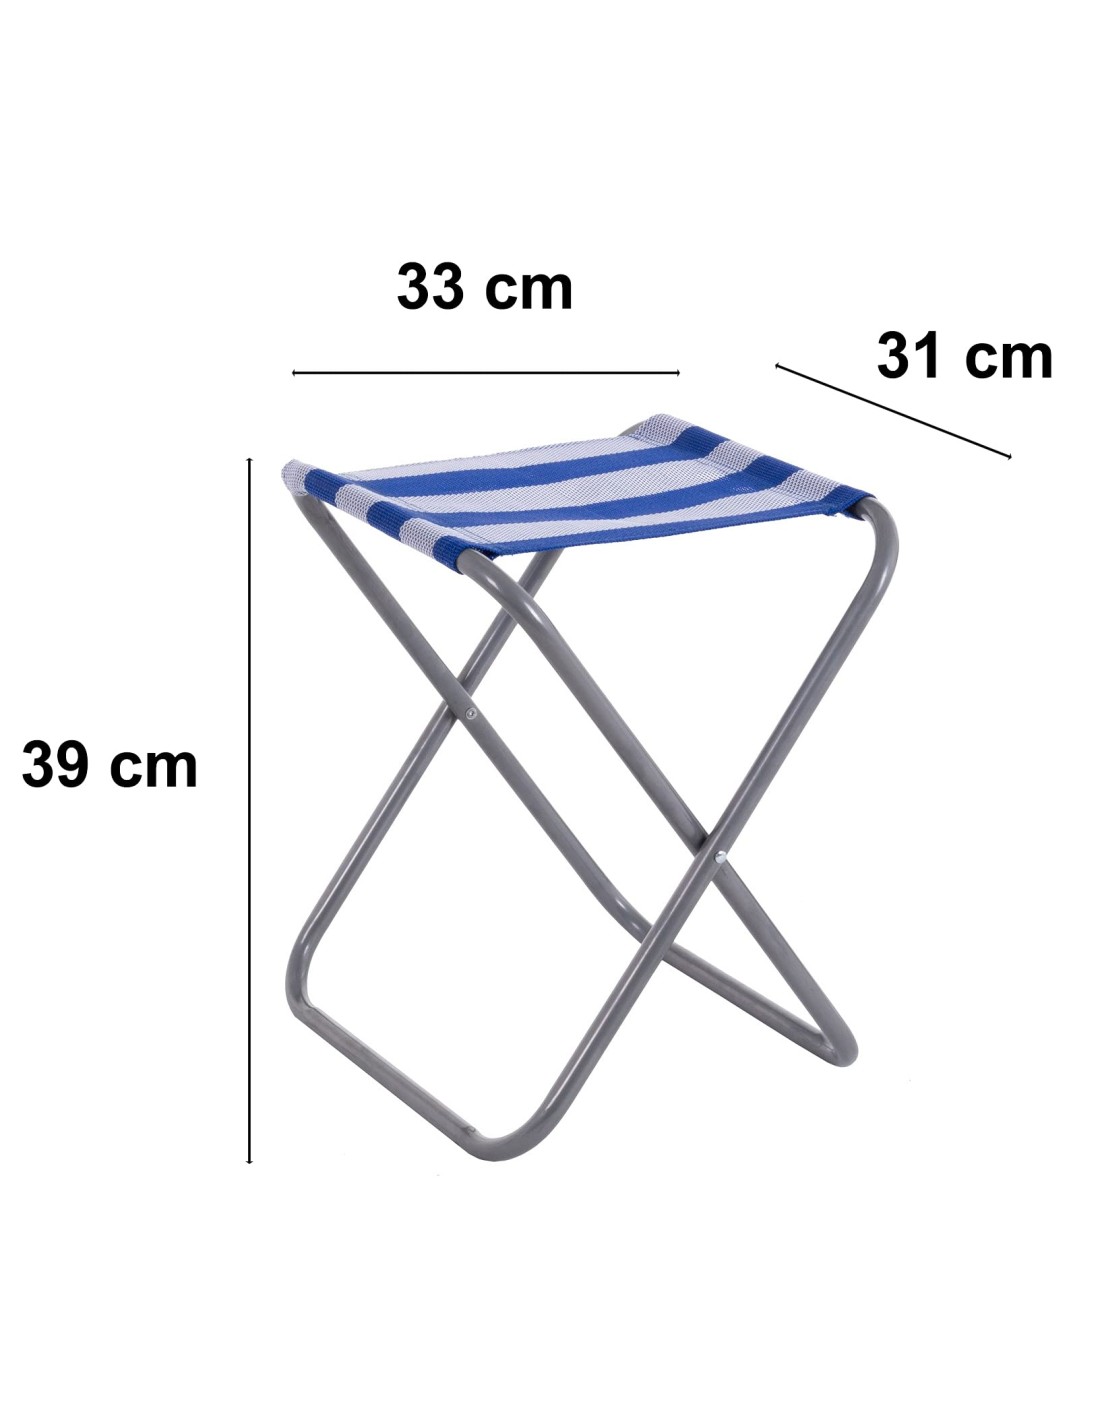 Taburetes Plegable Mini Silla Portátil de Aluminio Taburete de Playa de  Rayas Azul de Textileno de 39x31x33 cm